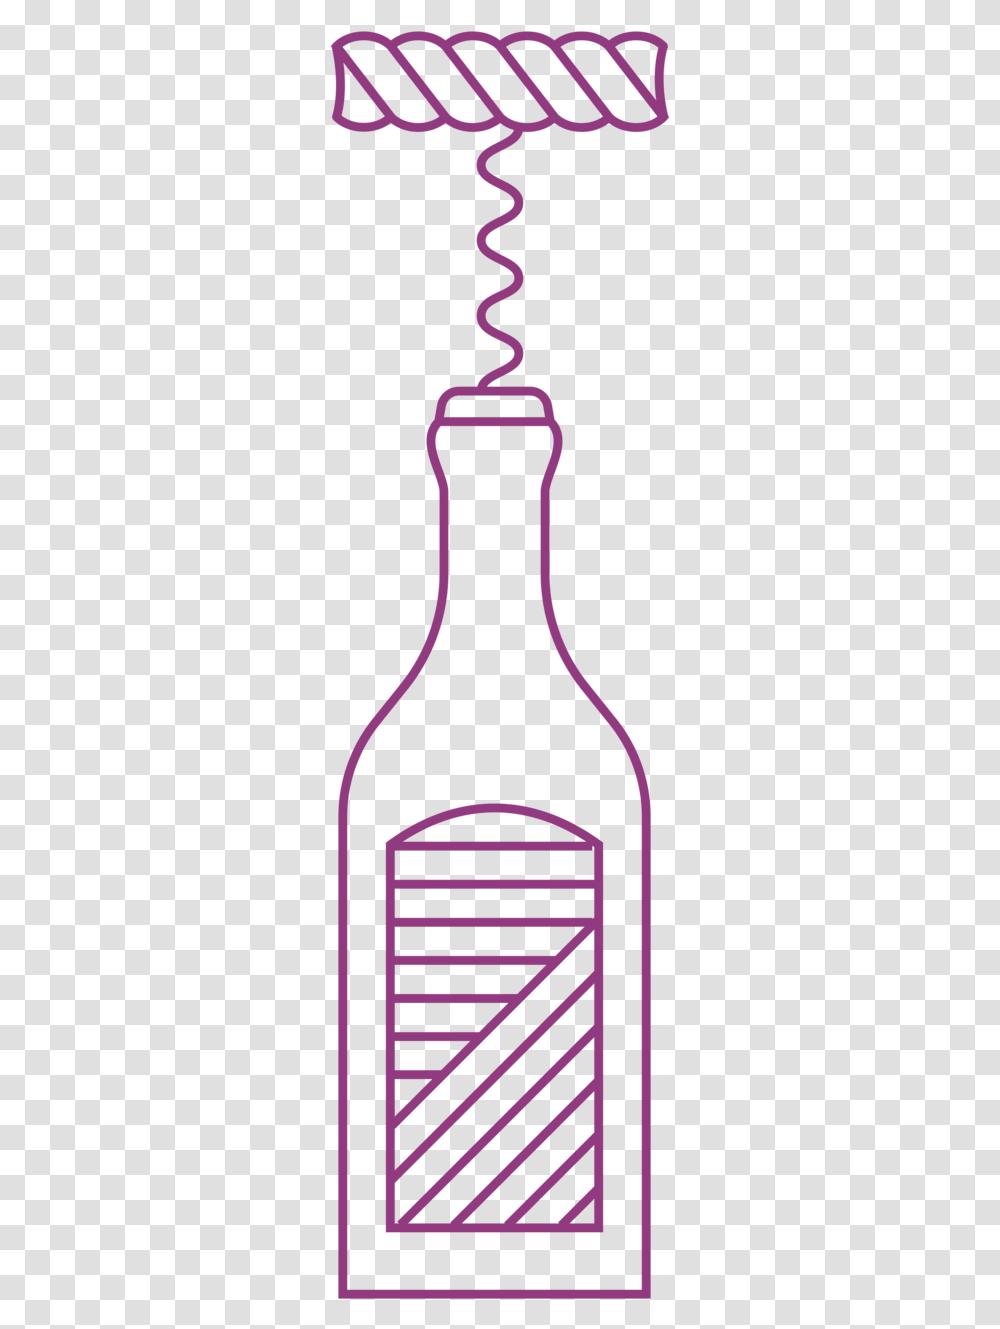 Vino 07 Glass Bottle, Wine, Alcohol, Beverage, Drink Transparent Png